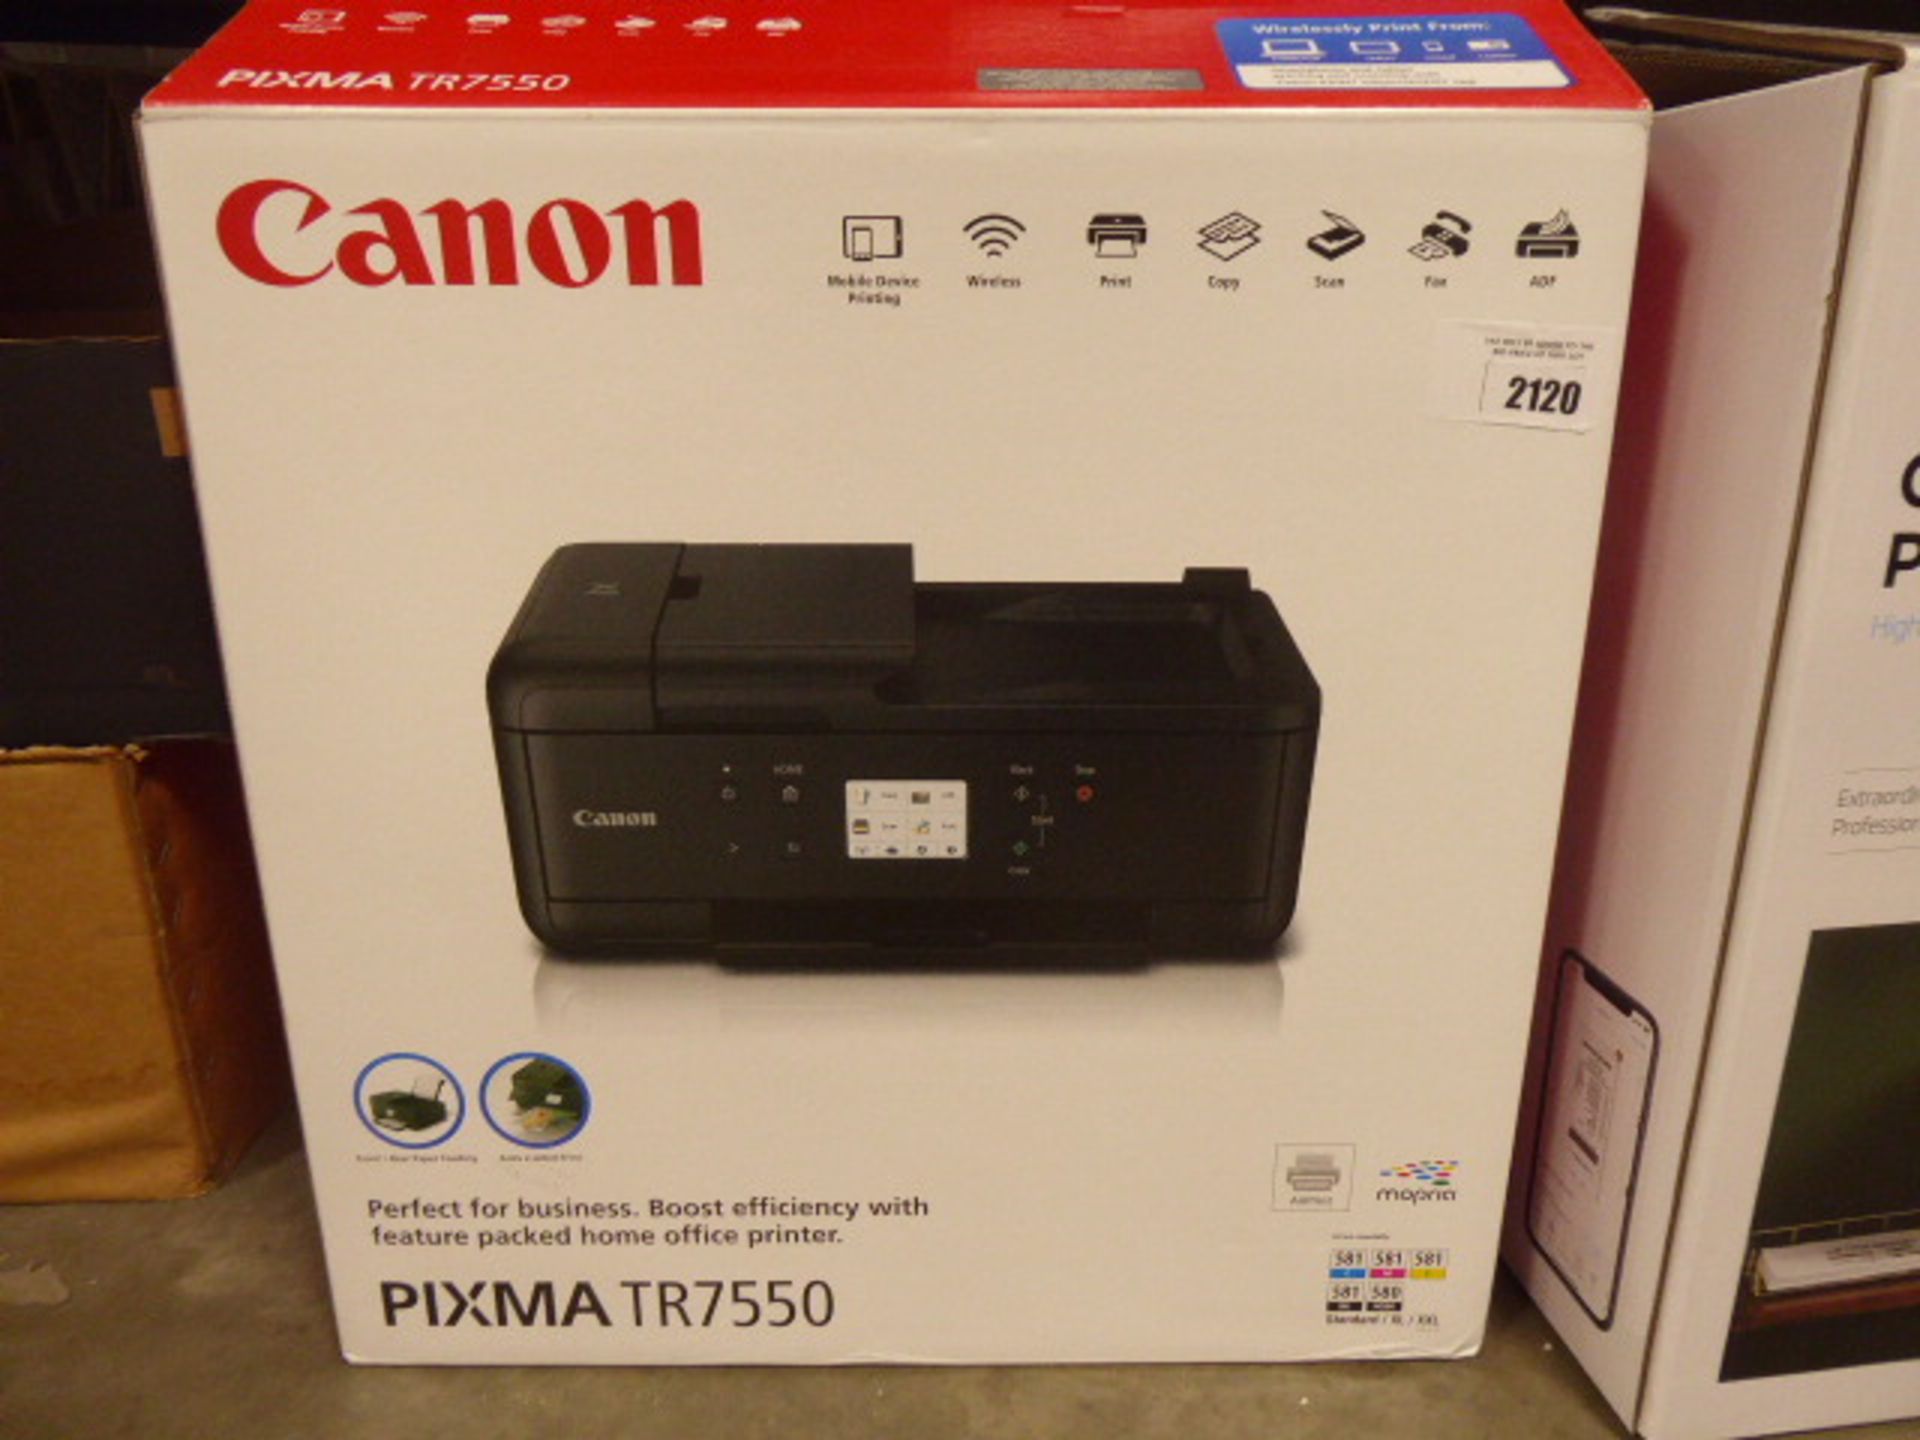 Canon Pixma TR7550 all in one printer in box